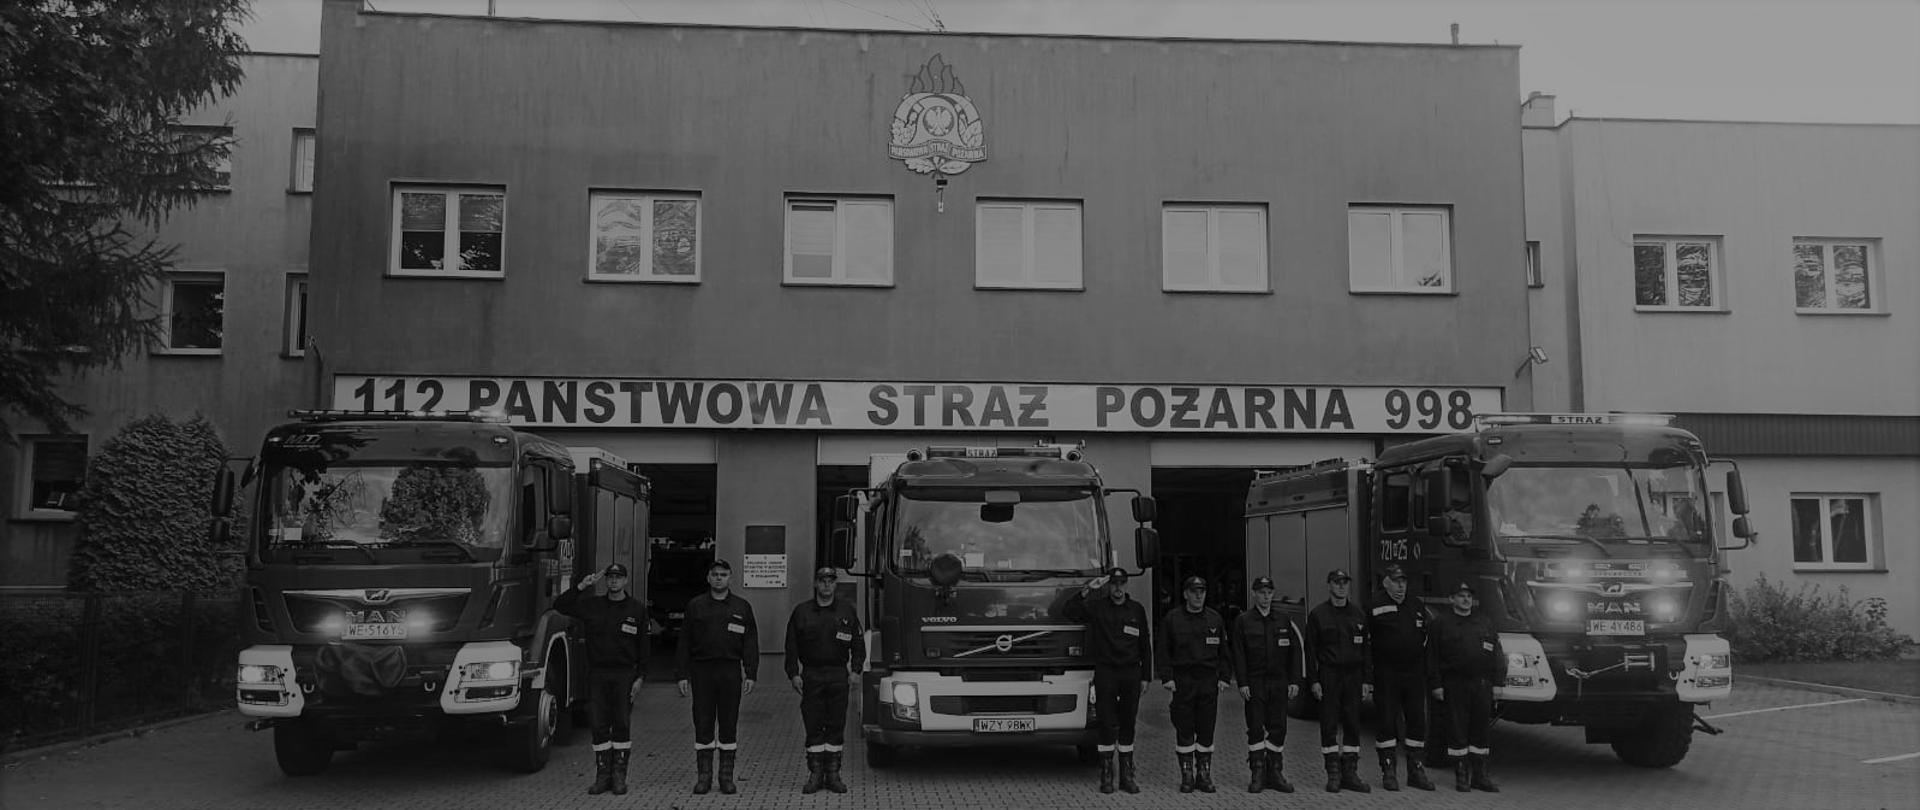 Zdjęcie wykonane przed Komendą Powiatową Państwowej Straży Pożarnej w Żyrardowie. Na zdjęciu widać strażaków ustawionych w szeregu przed jednostką. Strażacy ubrani w ubrania koszarowe. Za nimi ustawione są pojazdy ratowniczo – gaśnicze. Pojazdy mają włączone alarmowe sygnały świetlne i dźwiękowe. Strażacy oddają hołd zmarłemu koledze strażakowi.